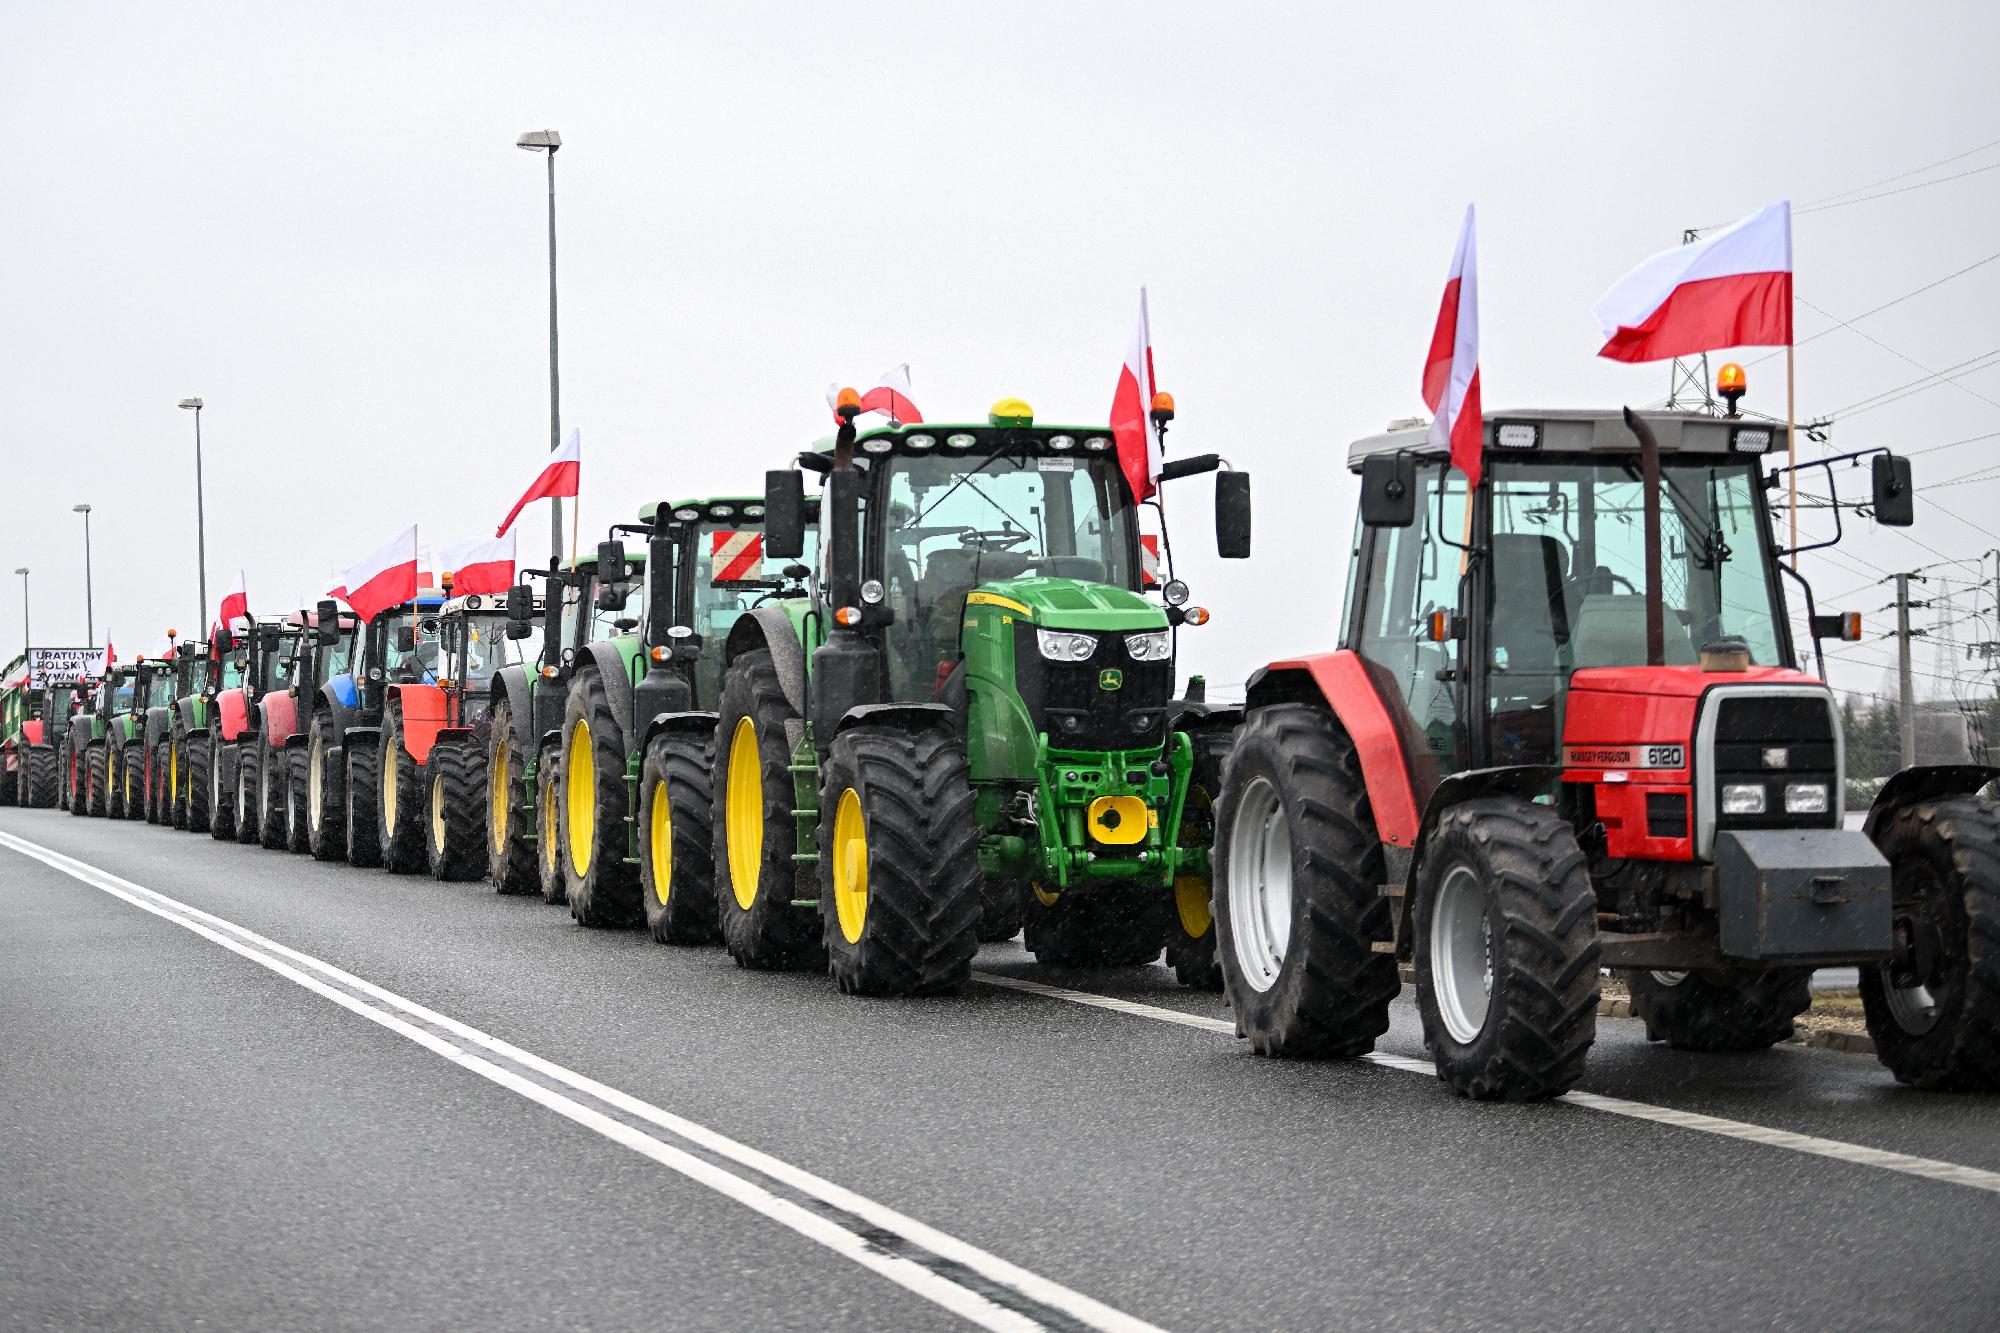 Tiltakozás: a horvát gazdákat aggasztja az olcsó ukrán búza importja